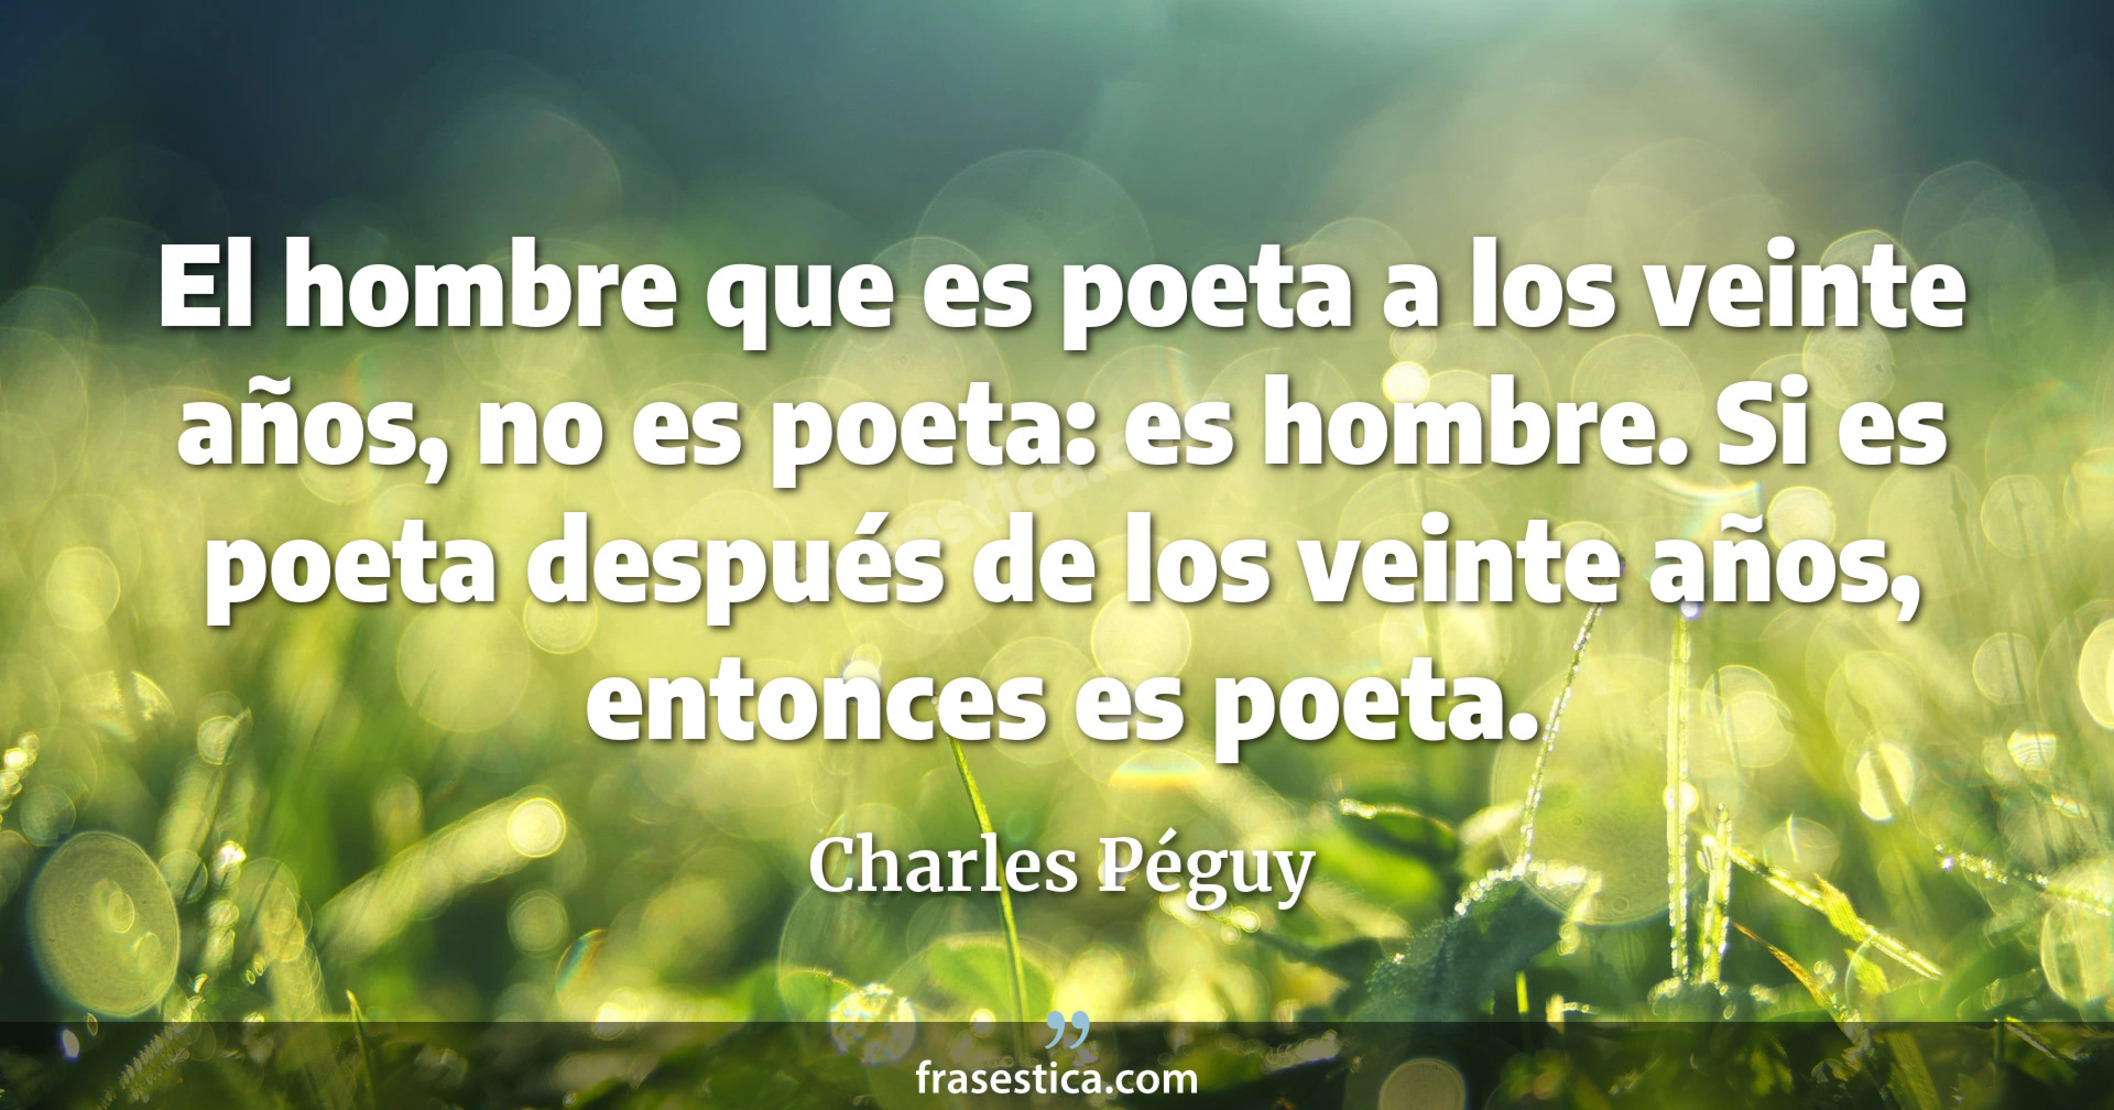 El hombre que es poeta a los veinte años, no es poeta: es hombre. Si es poeta después de los veinte años, entonces es poeta. - Charles Péguy